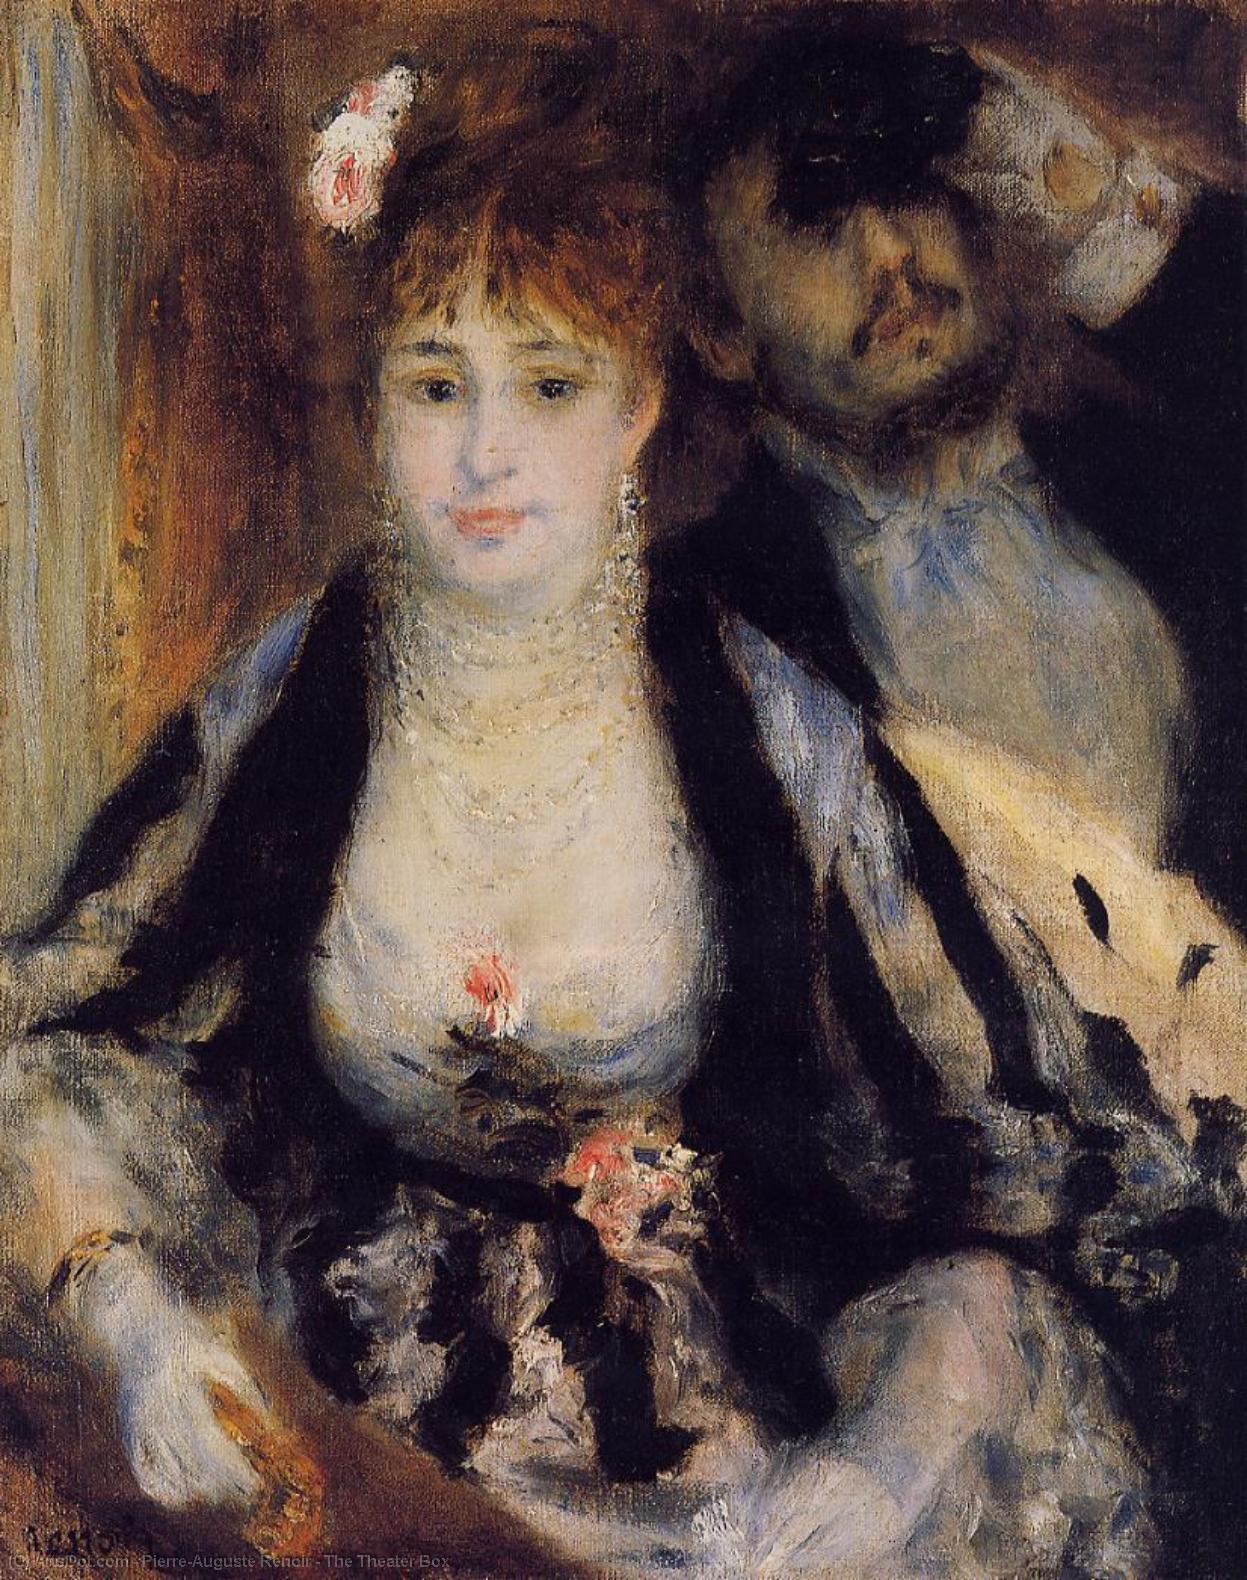 WikiOO.org - אנציקלופדיה לאמנויות יפות - ציור, יצירות אמנות Pierre-Auguste Renoir - The Theater Box